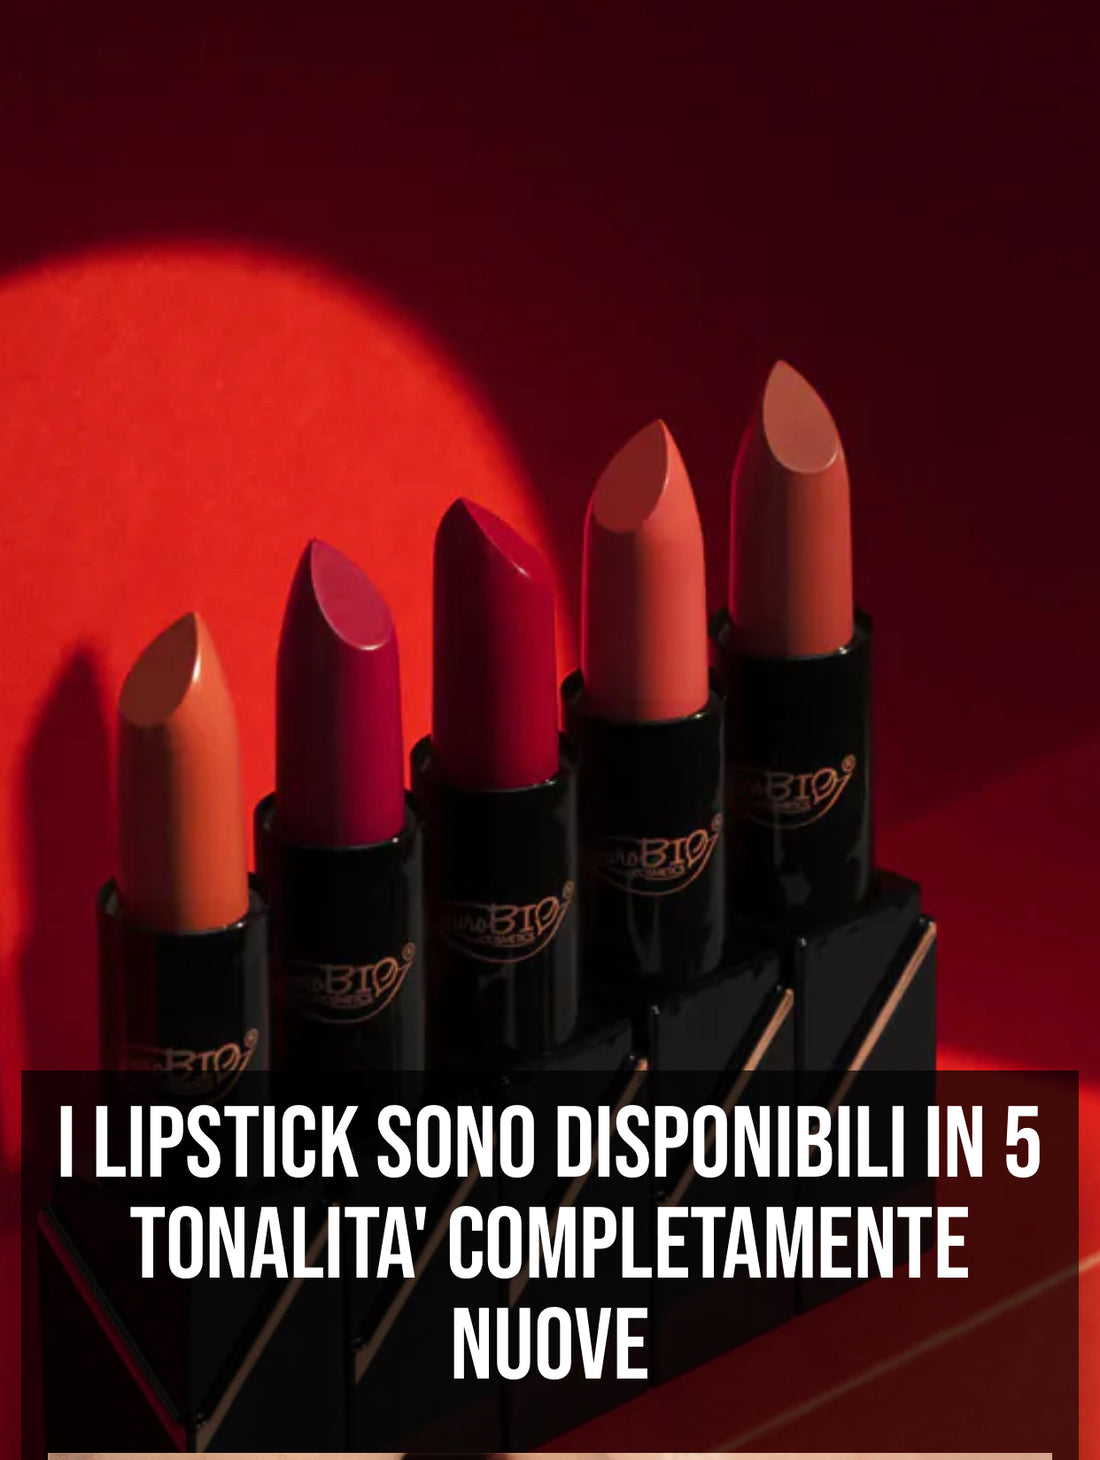 REFIL lipstick creamy matte - rossetto cremoso opaco